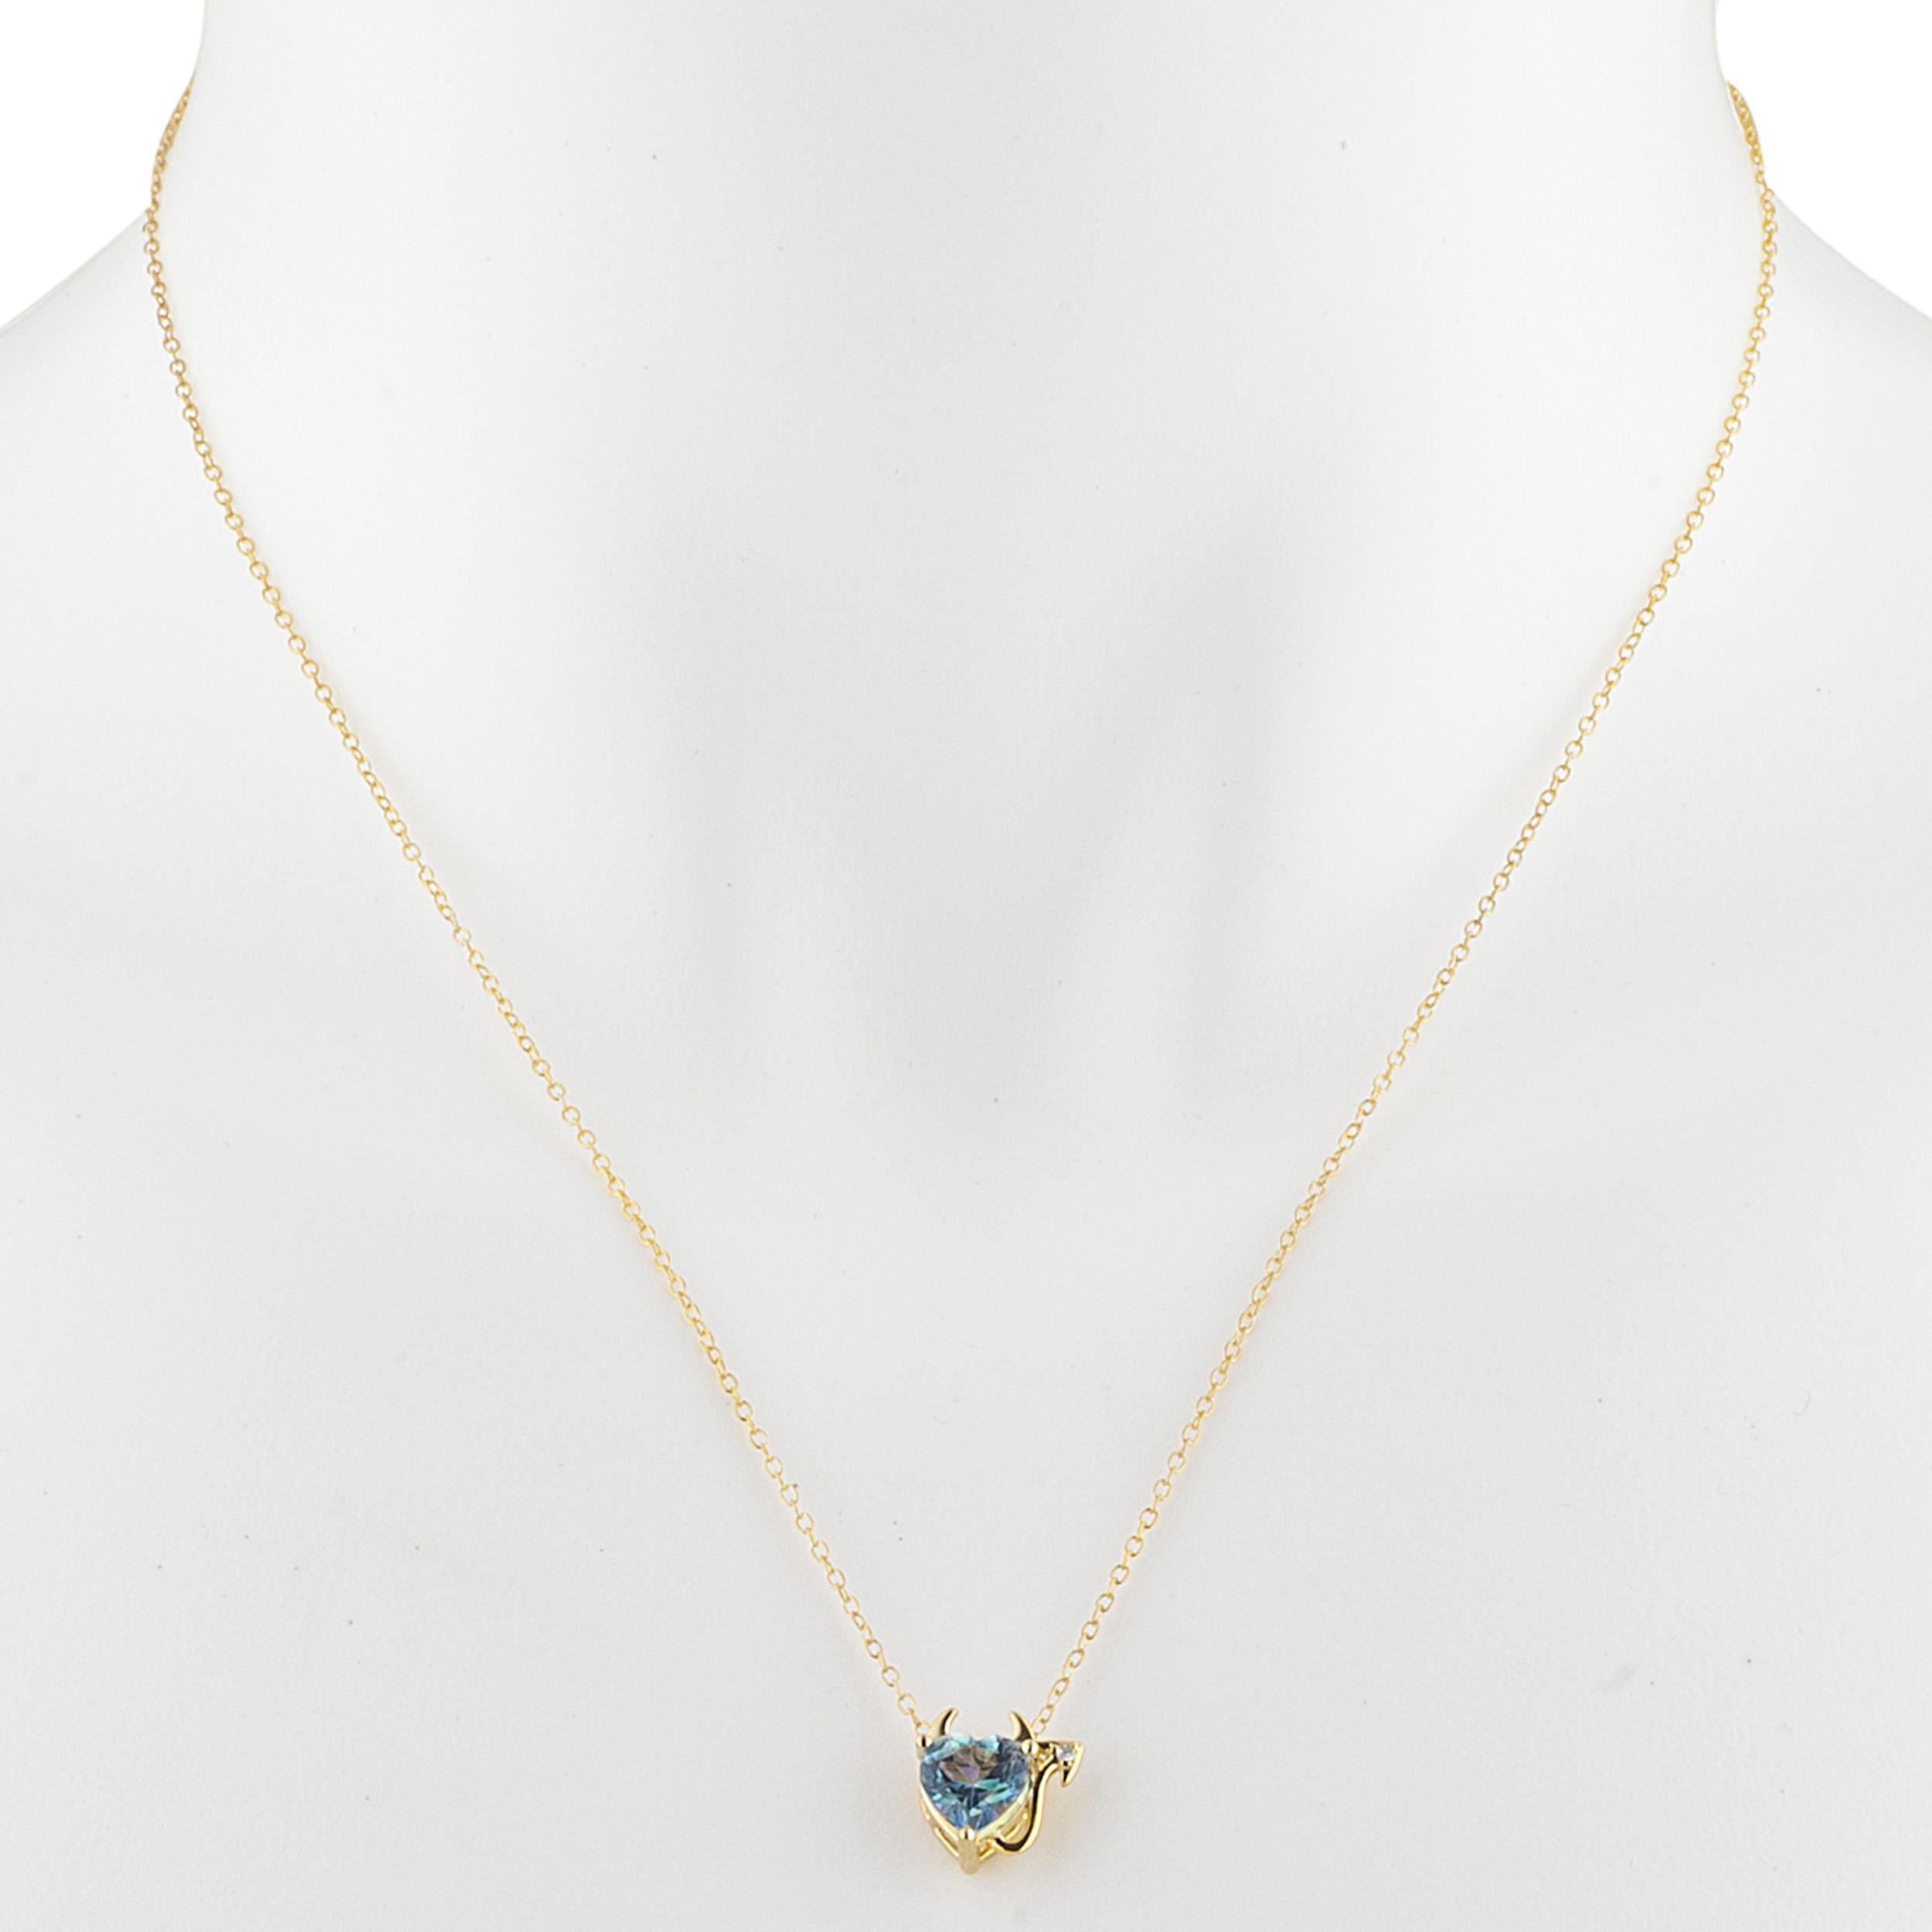 14Kt Gold 1.5 Ct Natural Blue Mystic Topaz & Diamond Devil Heart Pendant Necklace